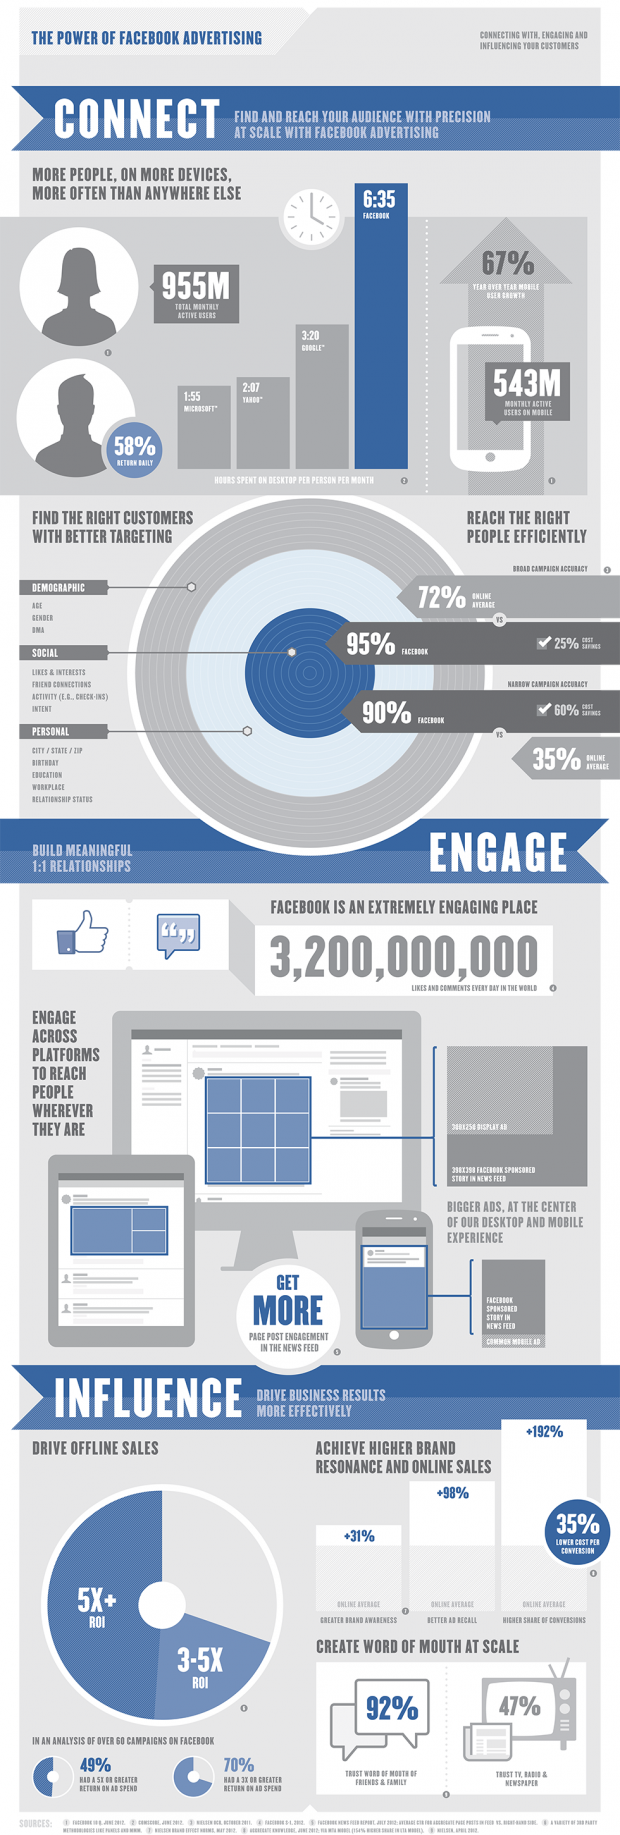 Користувачі Facebook залишають 3,2 млрд лайків і коментарів щодня (інфографіка)